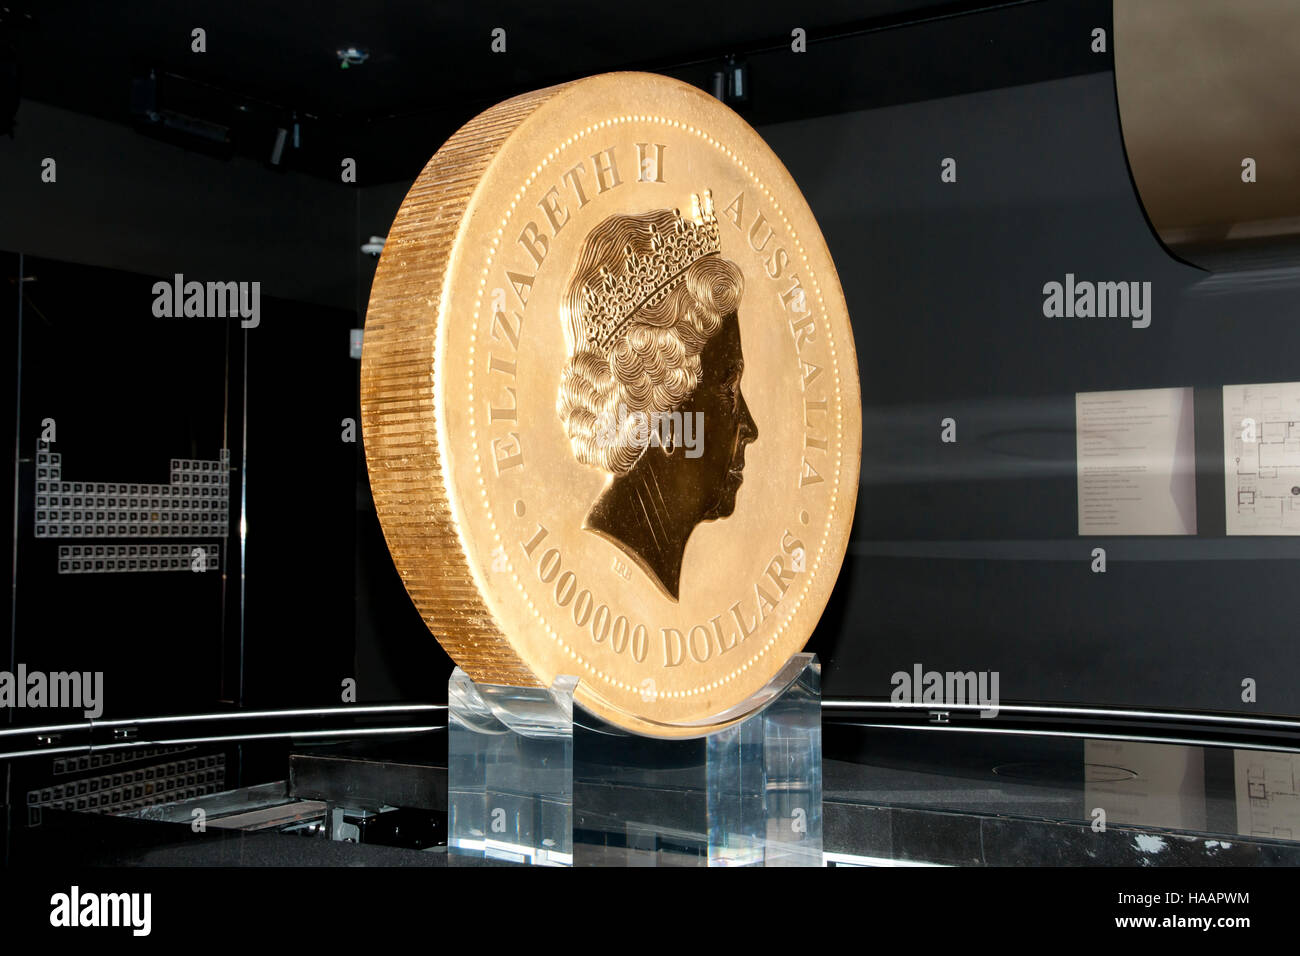 Weltweit größten Gold Münze - Perth - Australien Stockfoto